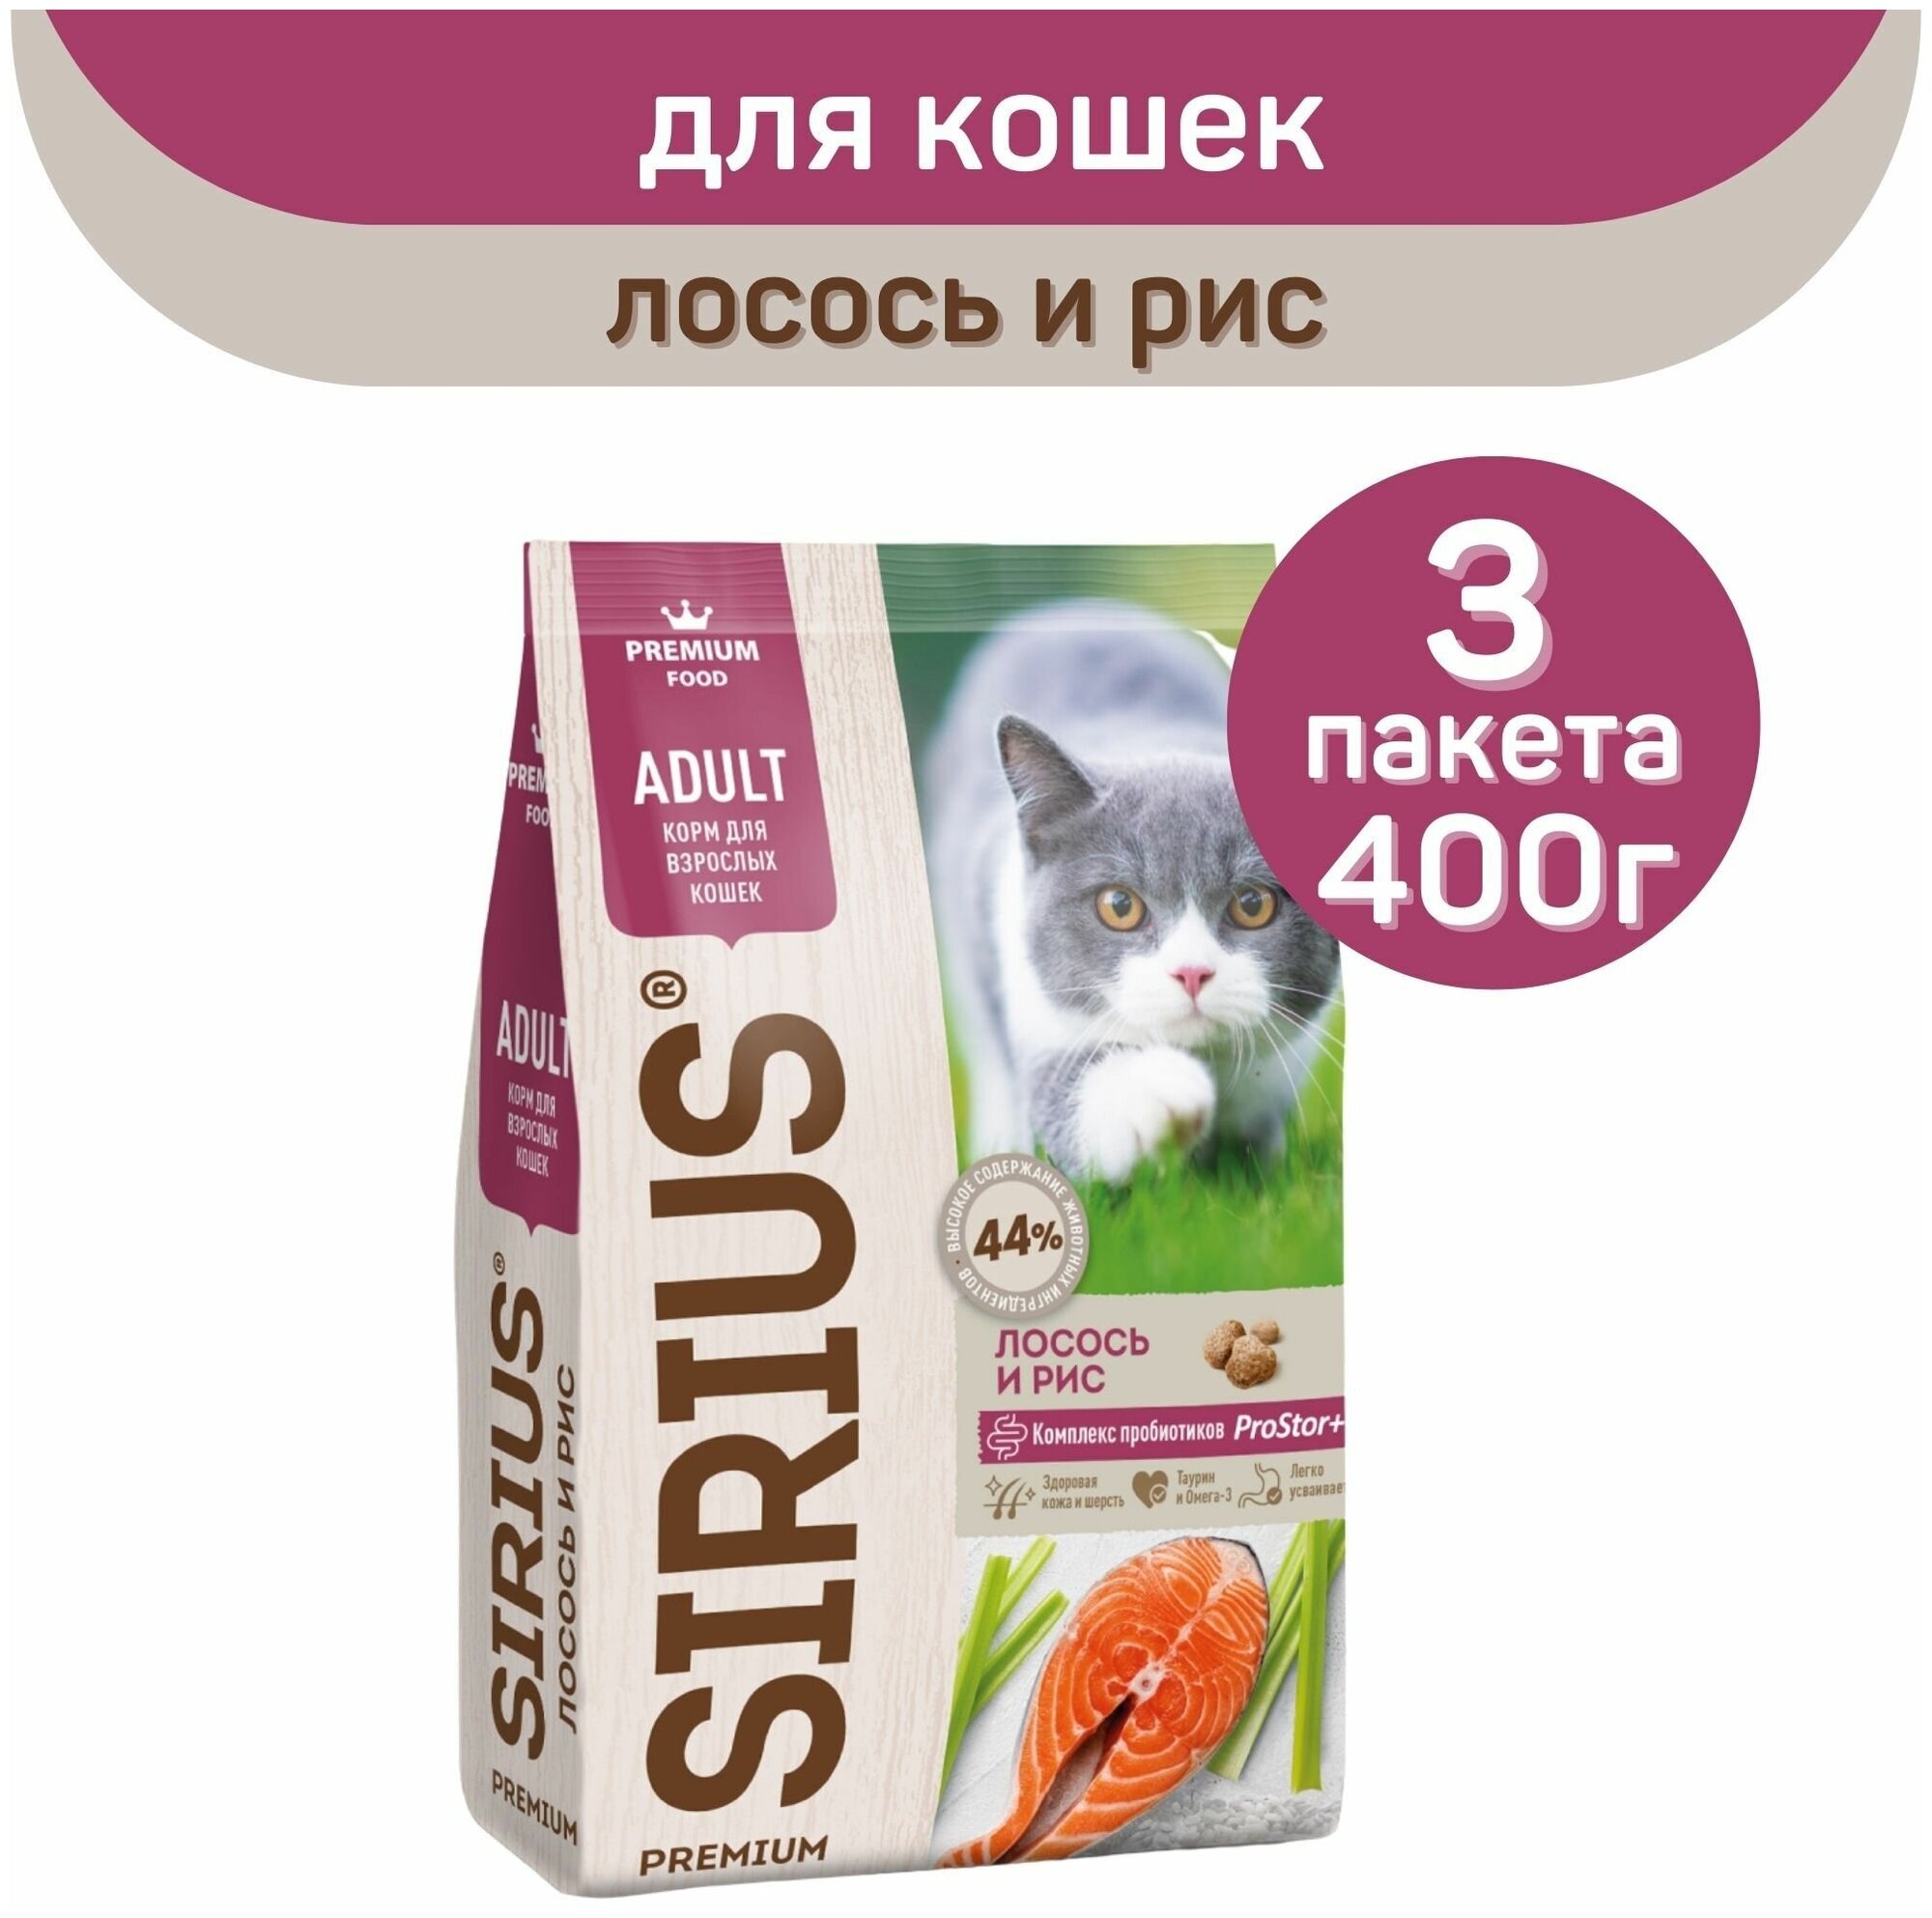 Полнорационный сухой корм SIRIUS PREMIUM, лосось и рис, 3 упаковки х 400 г, для кошек старше 1 года